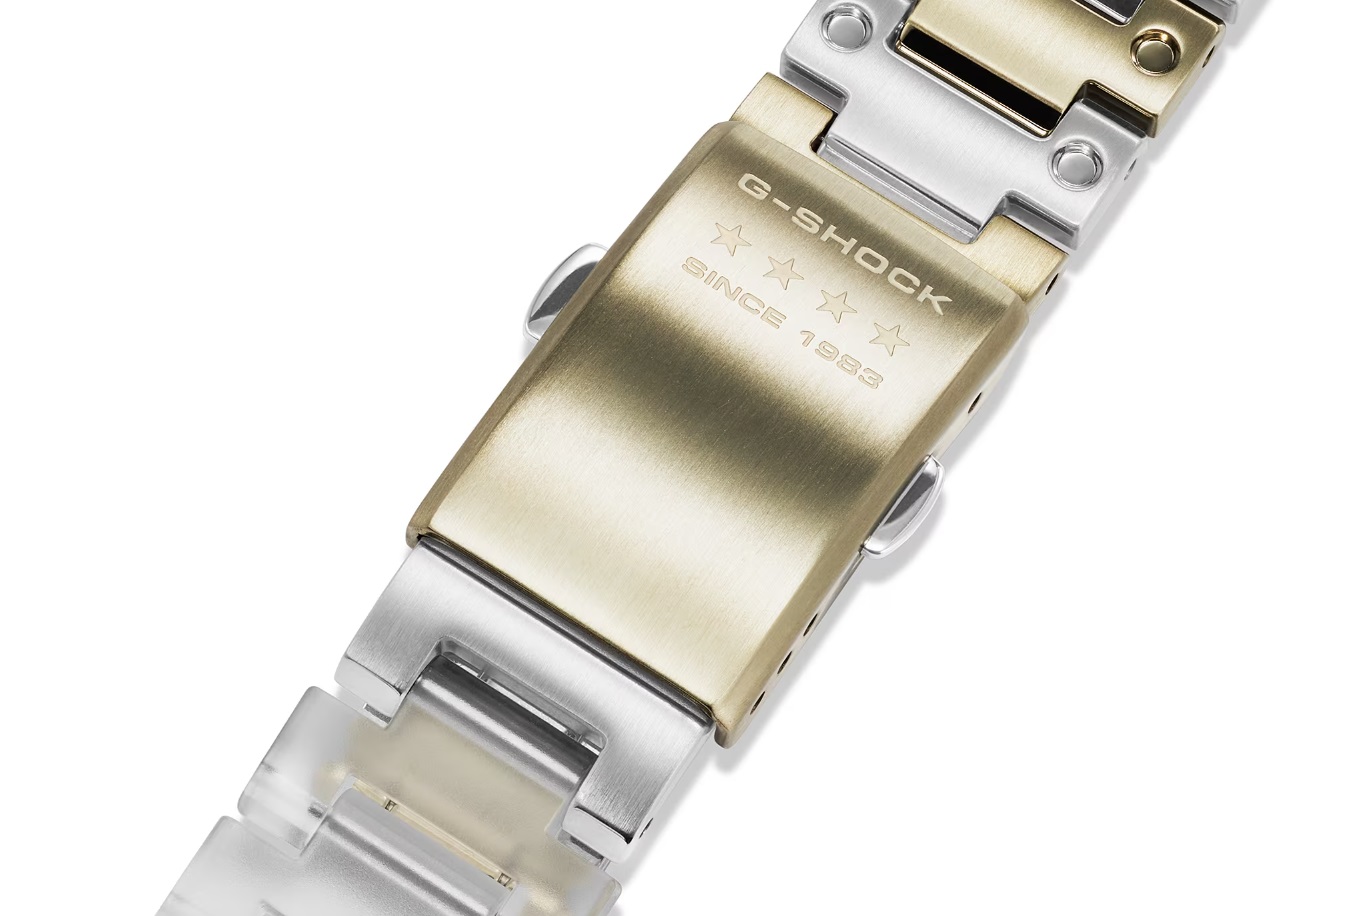  transparentny zegarek męski G-Shock  DWE-5640RX-7ER